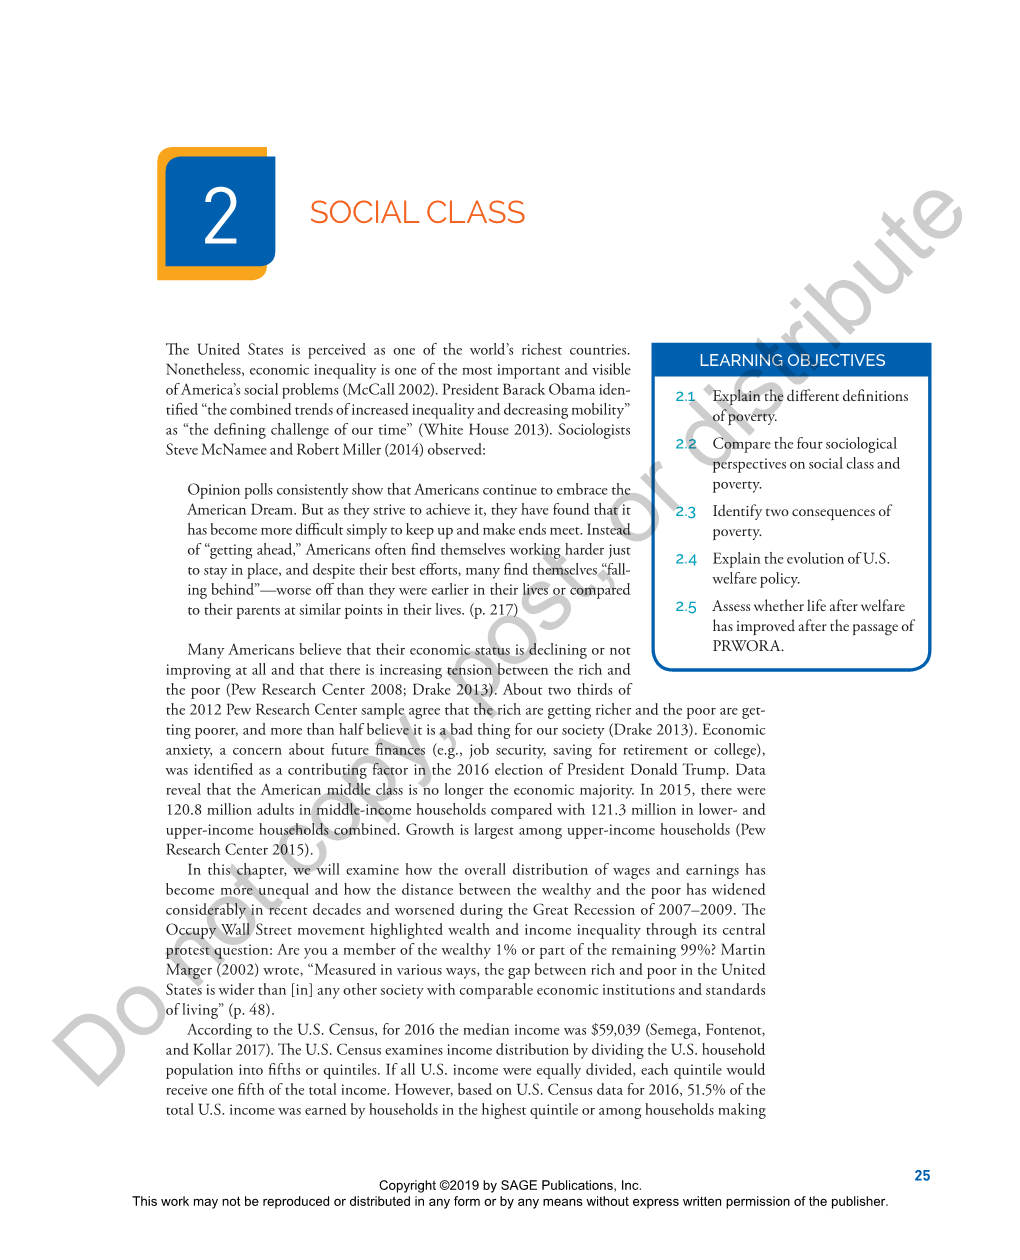 Chapter 2. Social Class